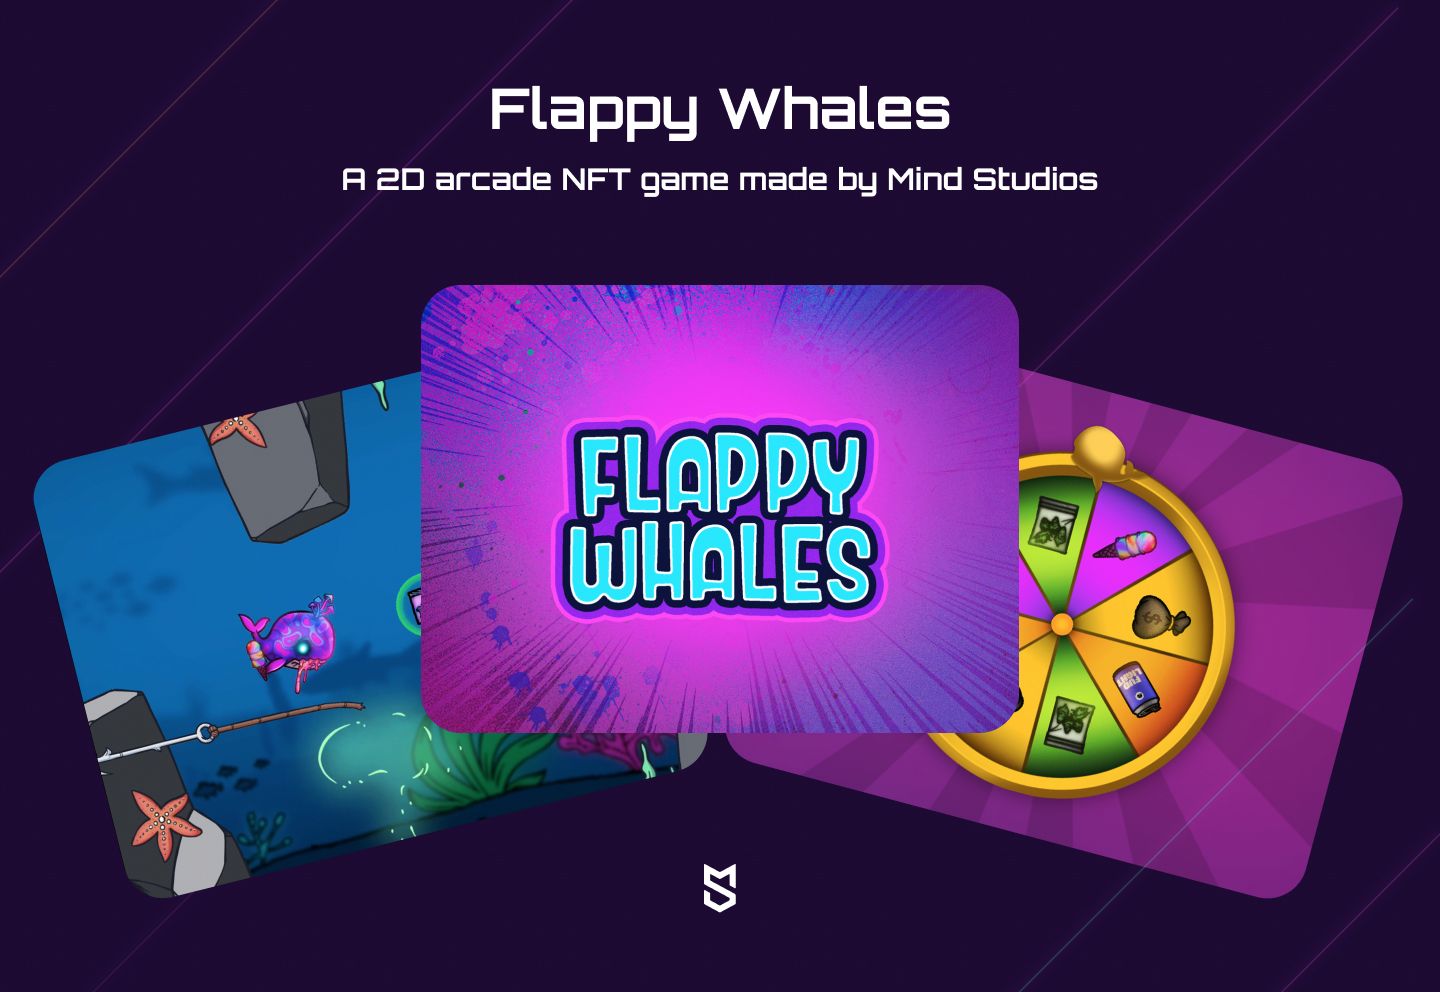 Gioco arcade 2D NFT Flappy Whales realizzato da Mind Studios